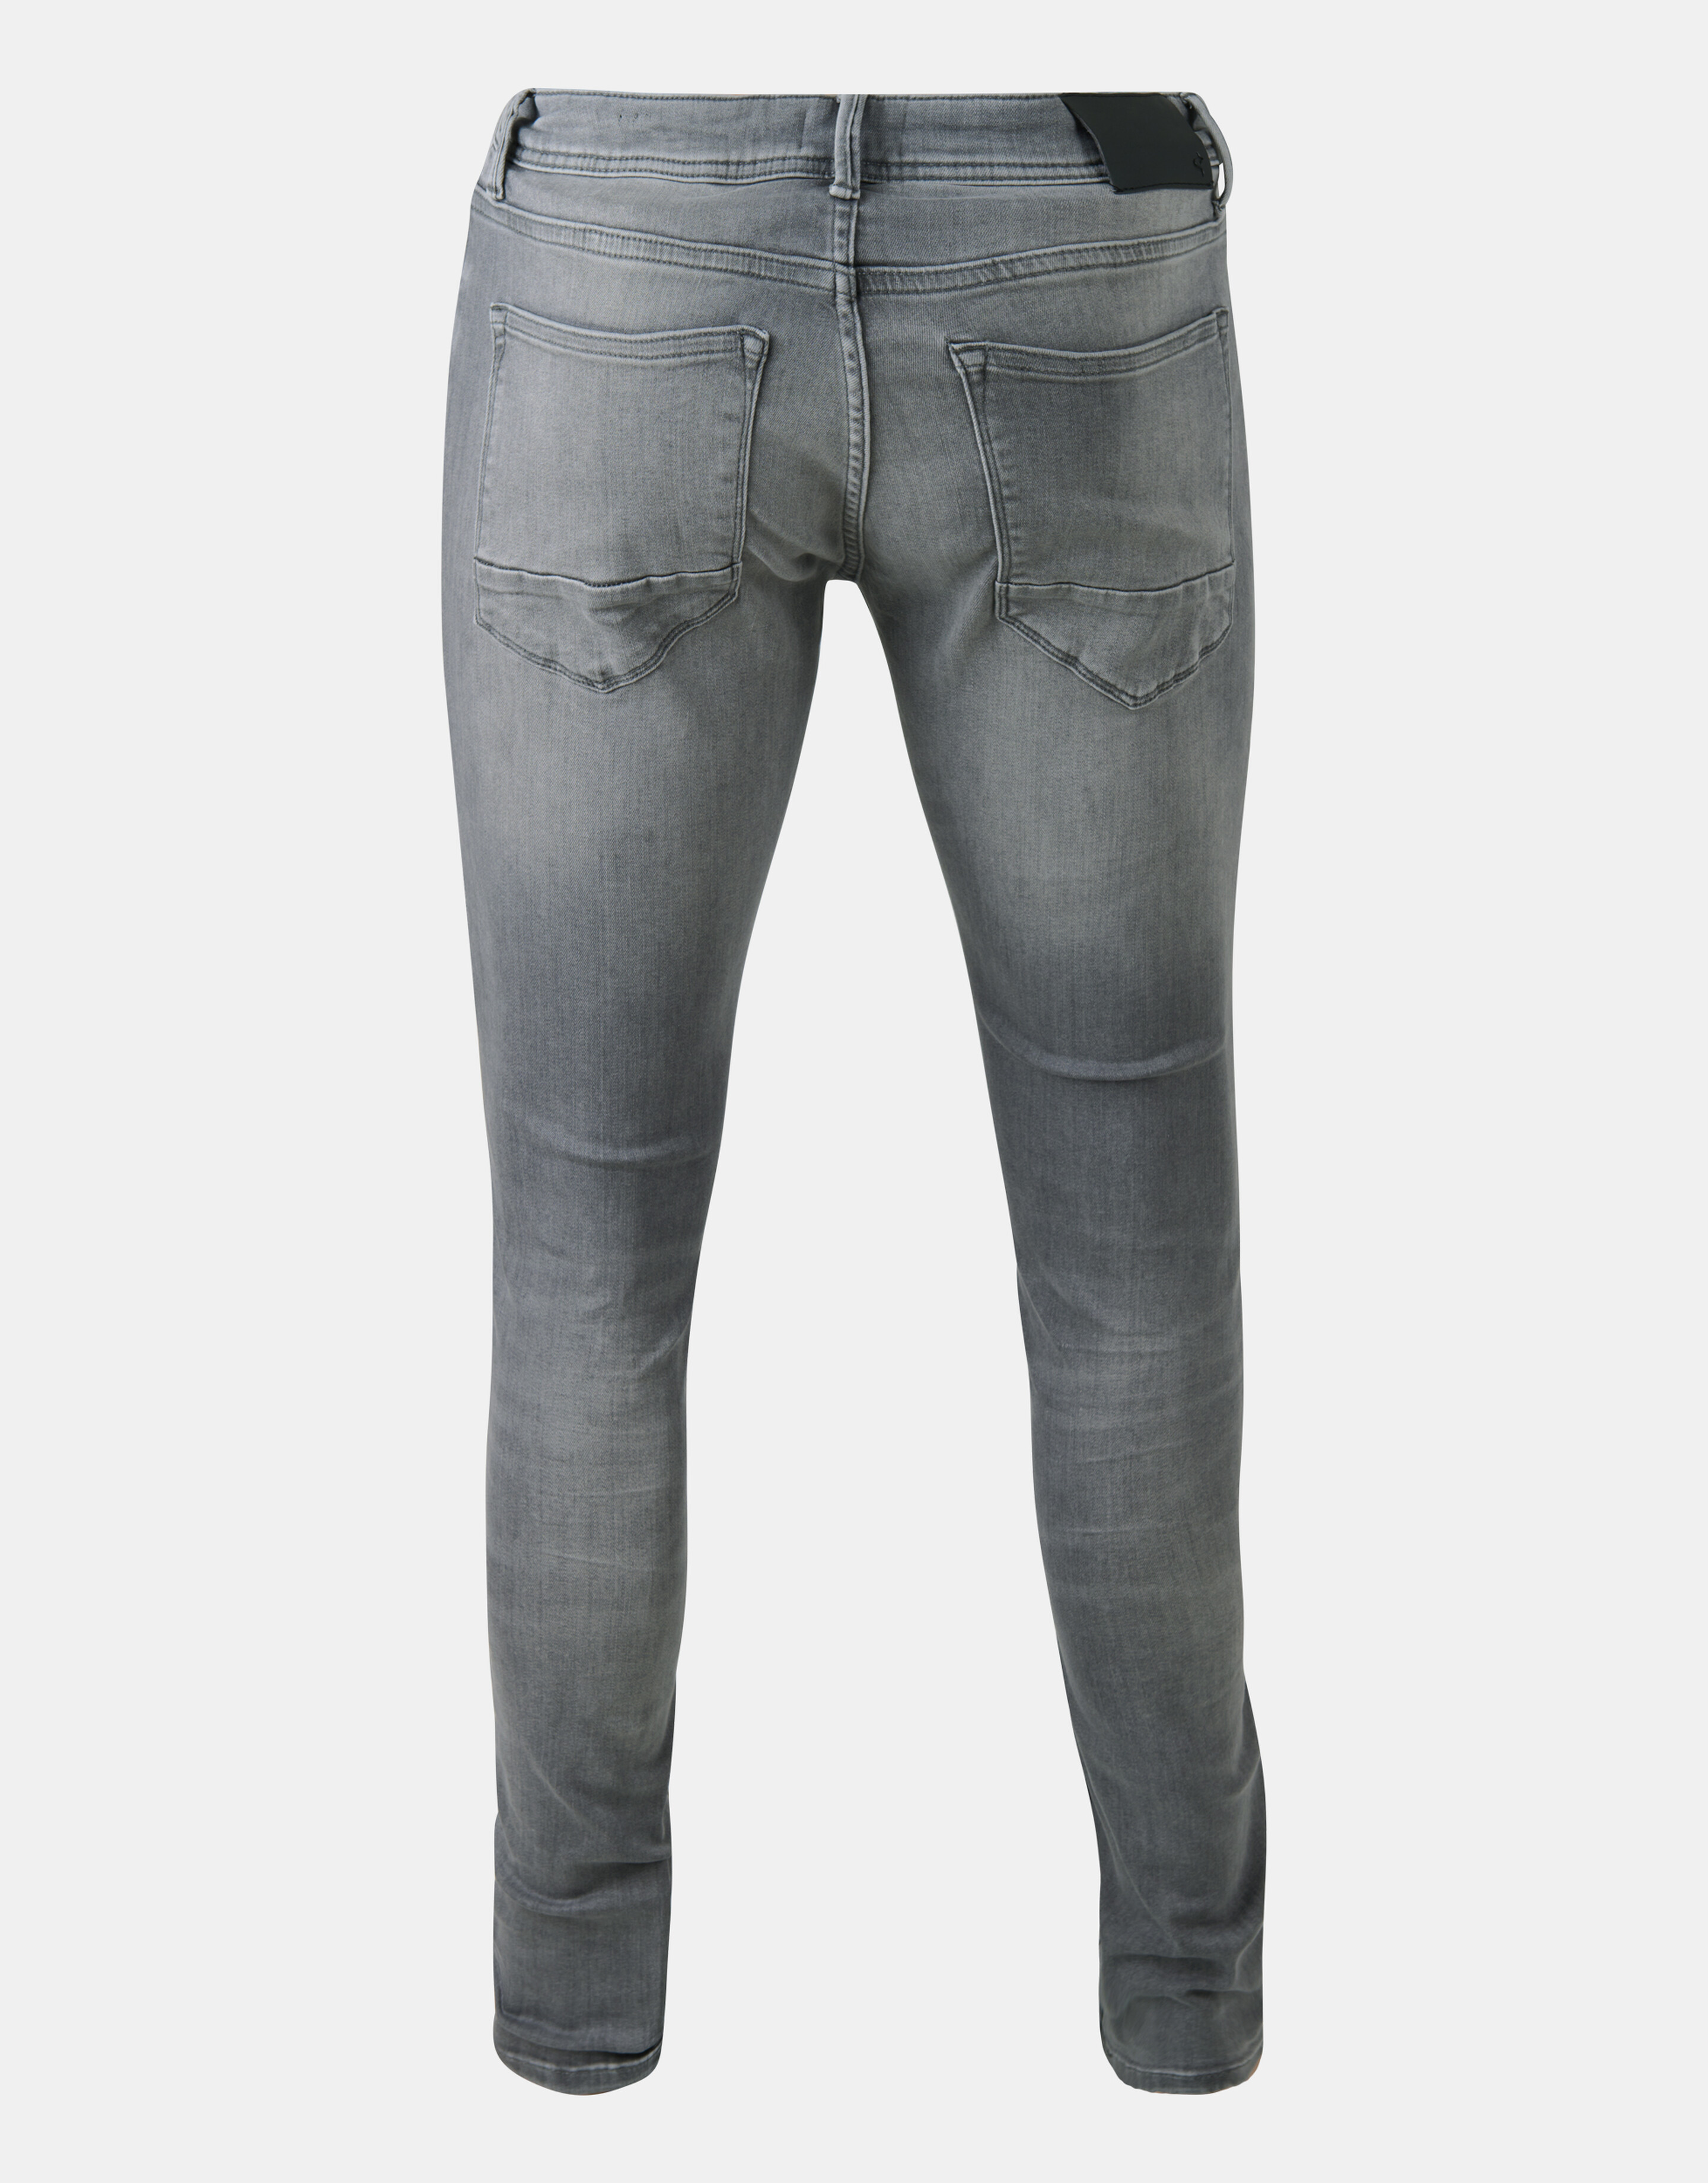 Skinny Fit Jeans Grijs L34 Refill